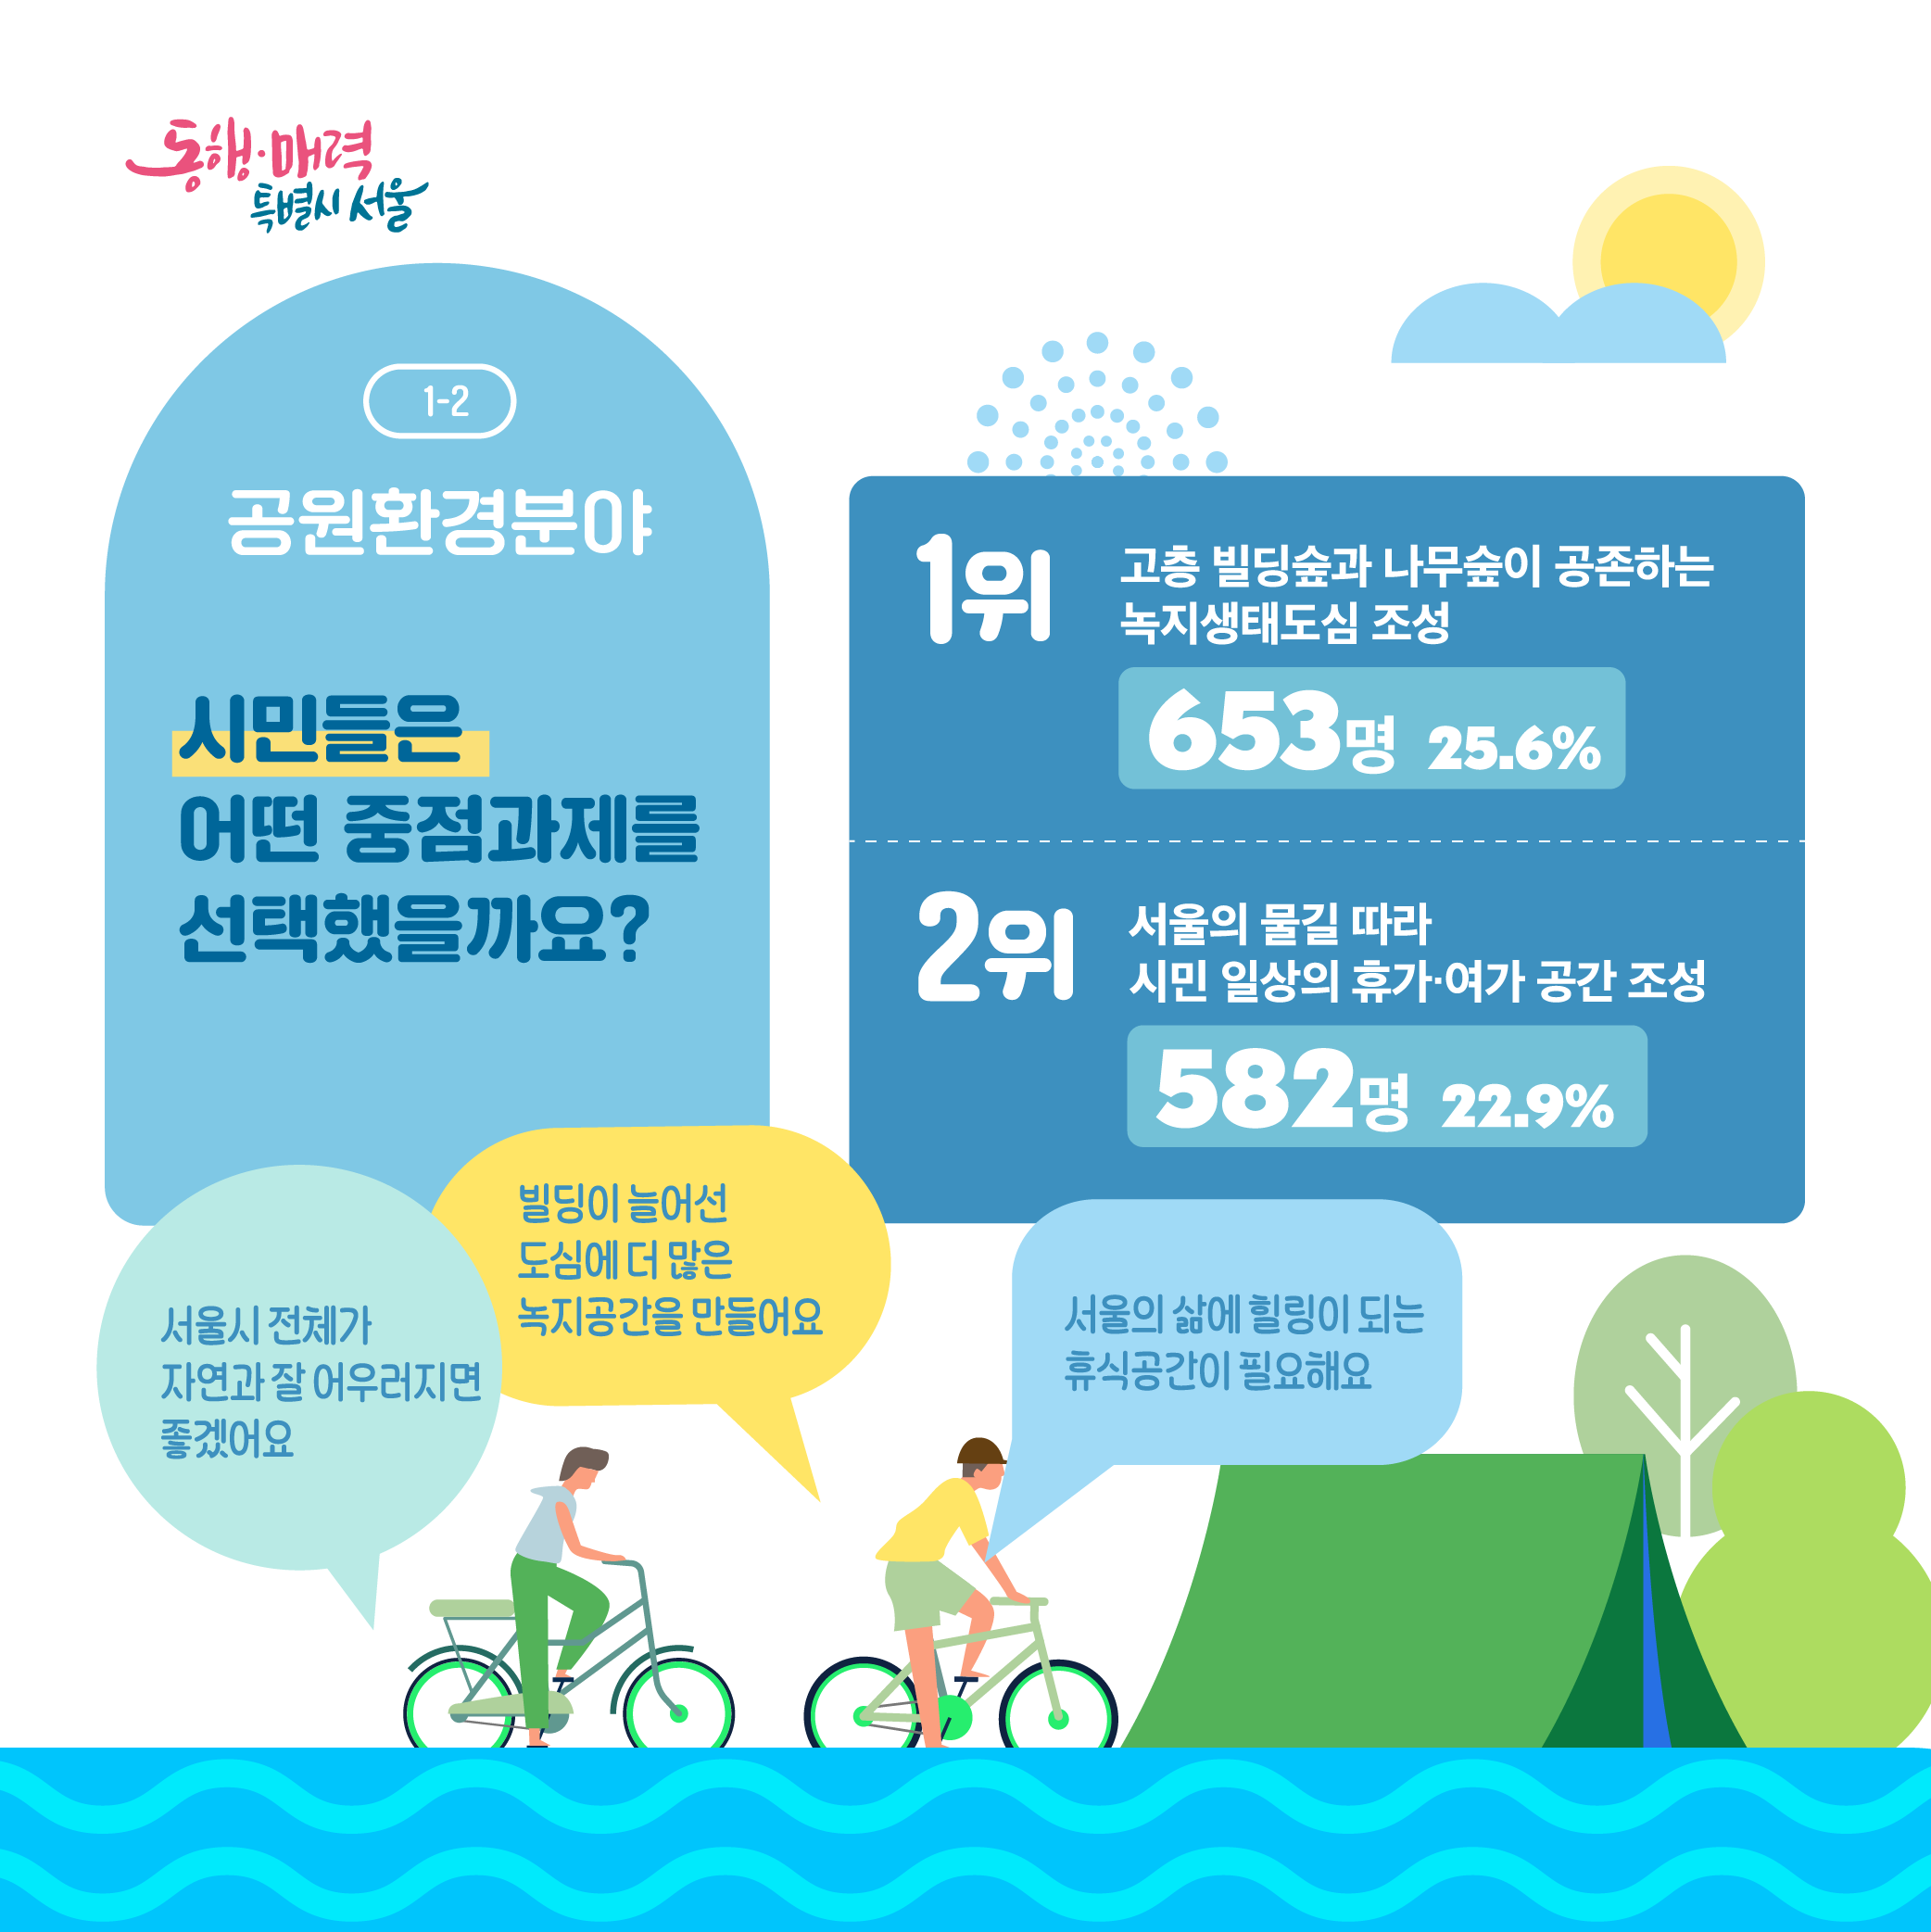 1-2. 공원환경분야: 시민들은 어떤 중점과제를 선택했을까요? 1위:고층 빌딩숲과 나무숲이 공존하는 녹지생태도심 조성(653명,25.6%),2위:서울의 물길 따라 시민 일상의 휴가,여가 공간조성(582명,22.9%)